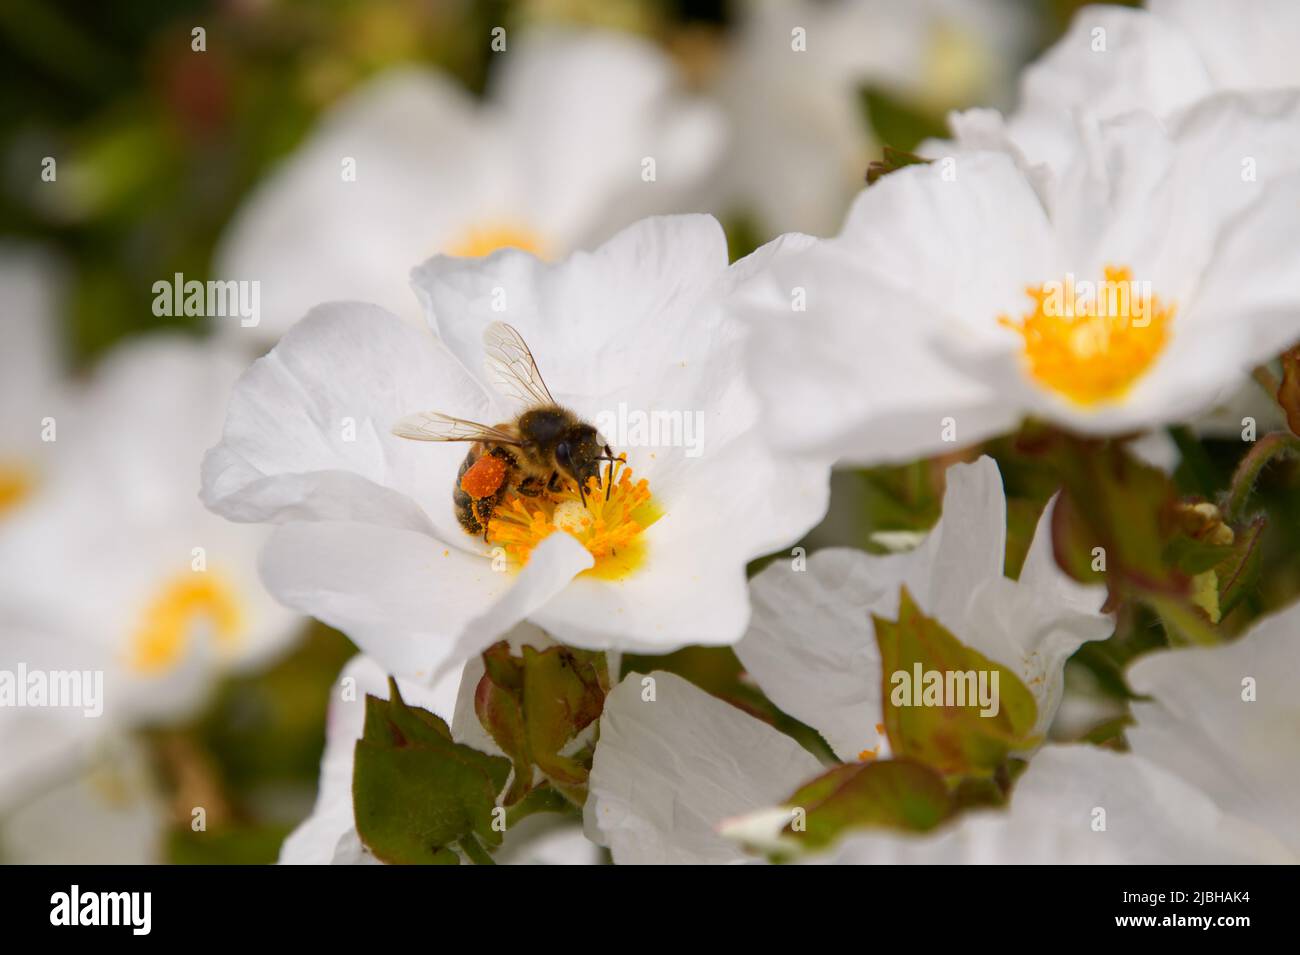 Honigbiene (APIs melifera), die sich auf einer weißen Anemonblume ernährt, Wolds Way Lavender Farm, Wintringham, Malton, North Yorkshire, Großbritannien Stockfoto